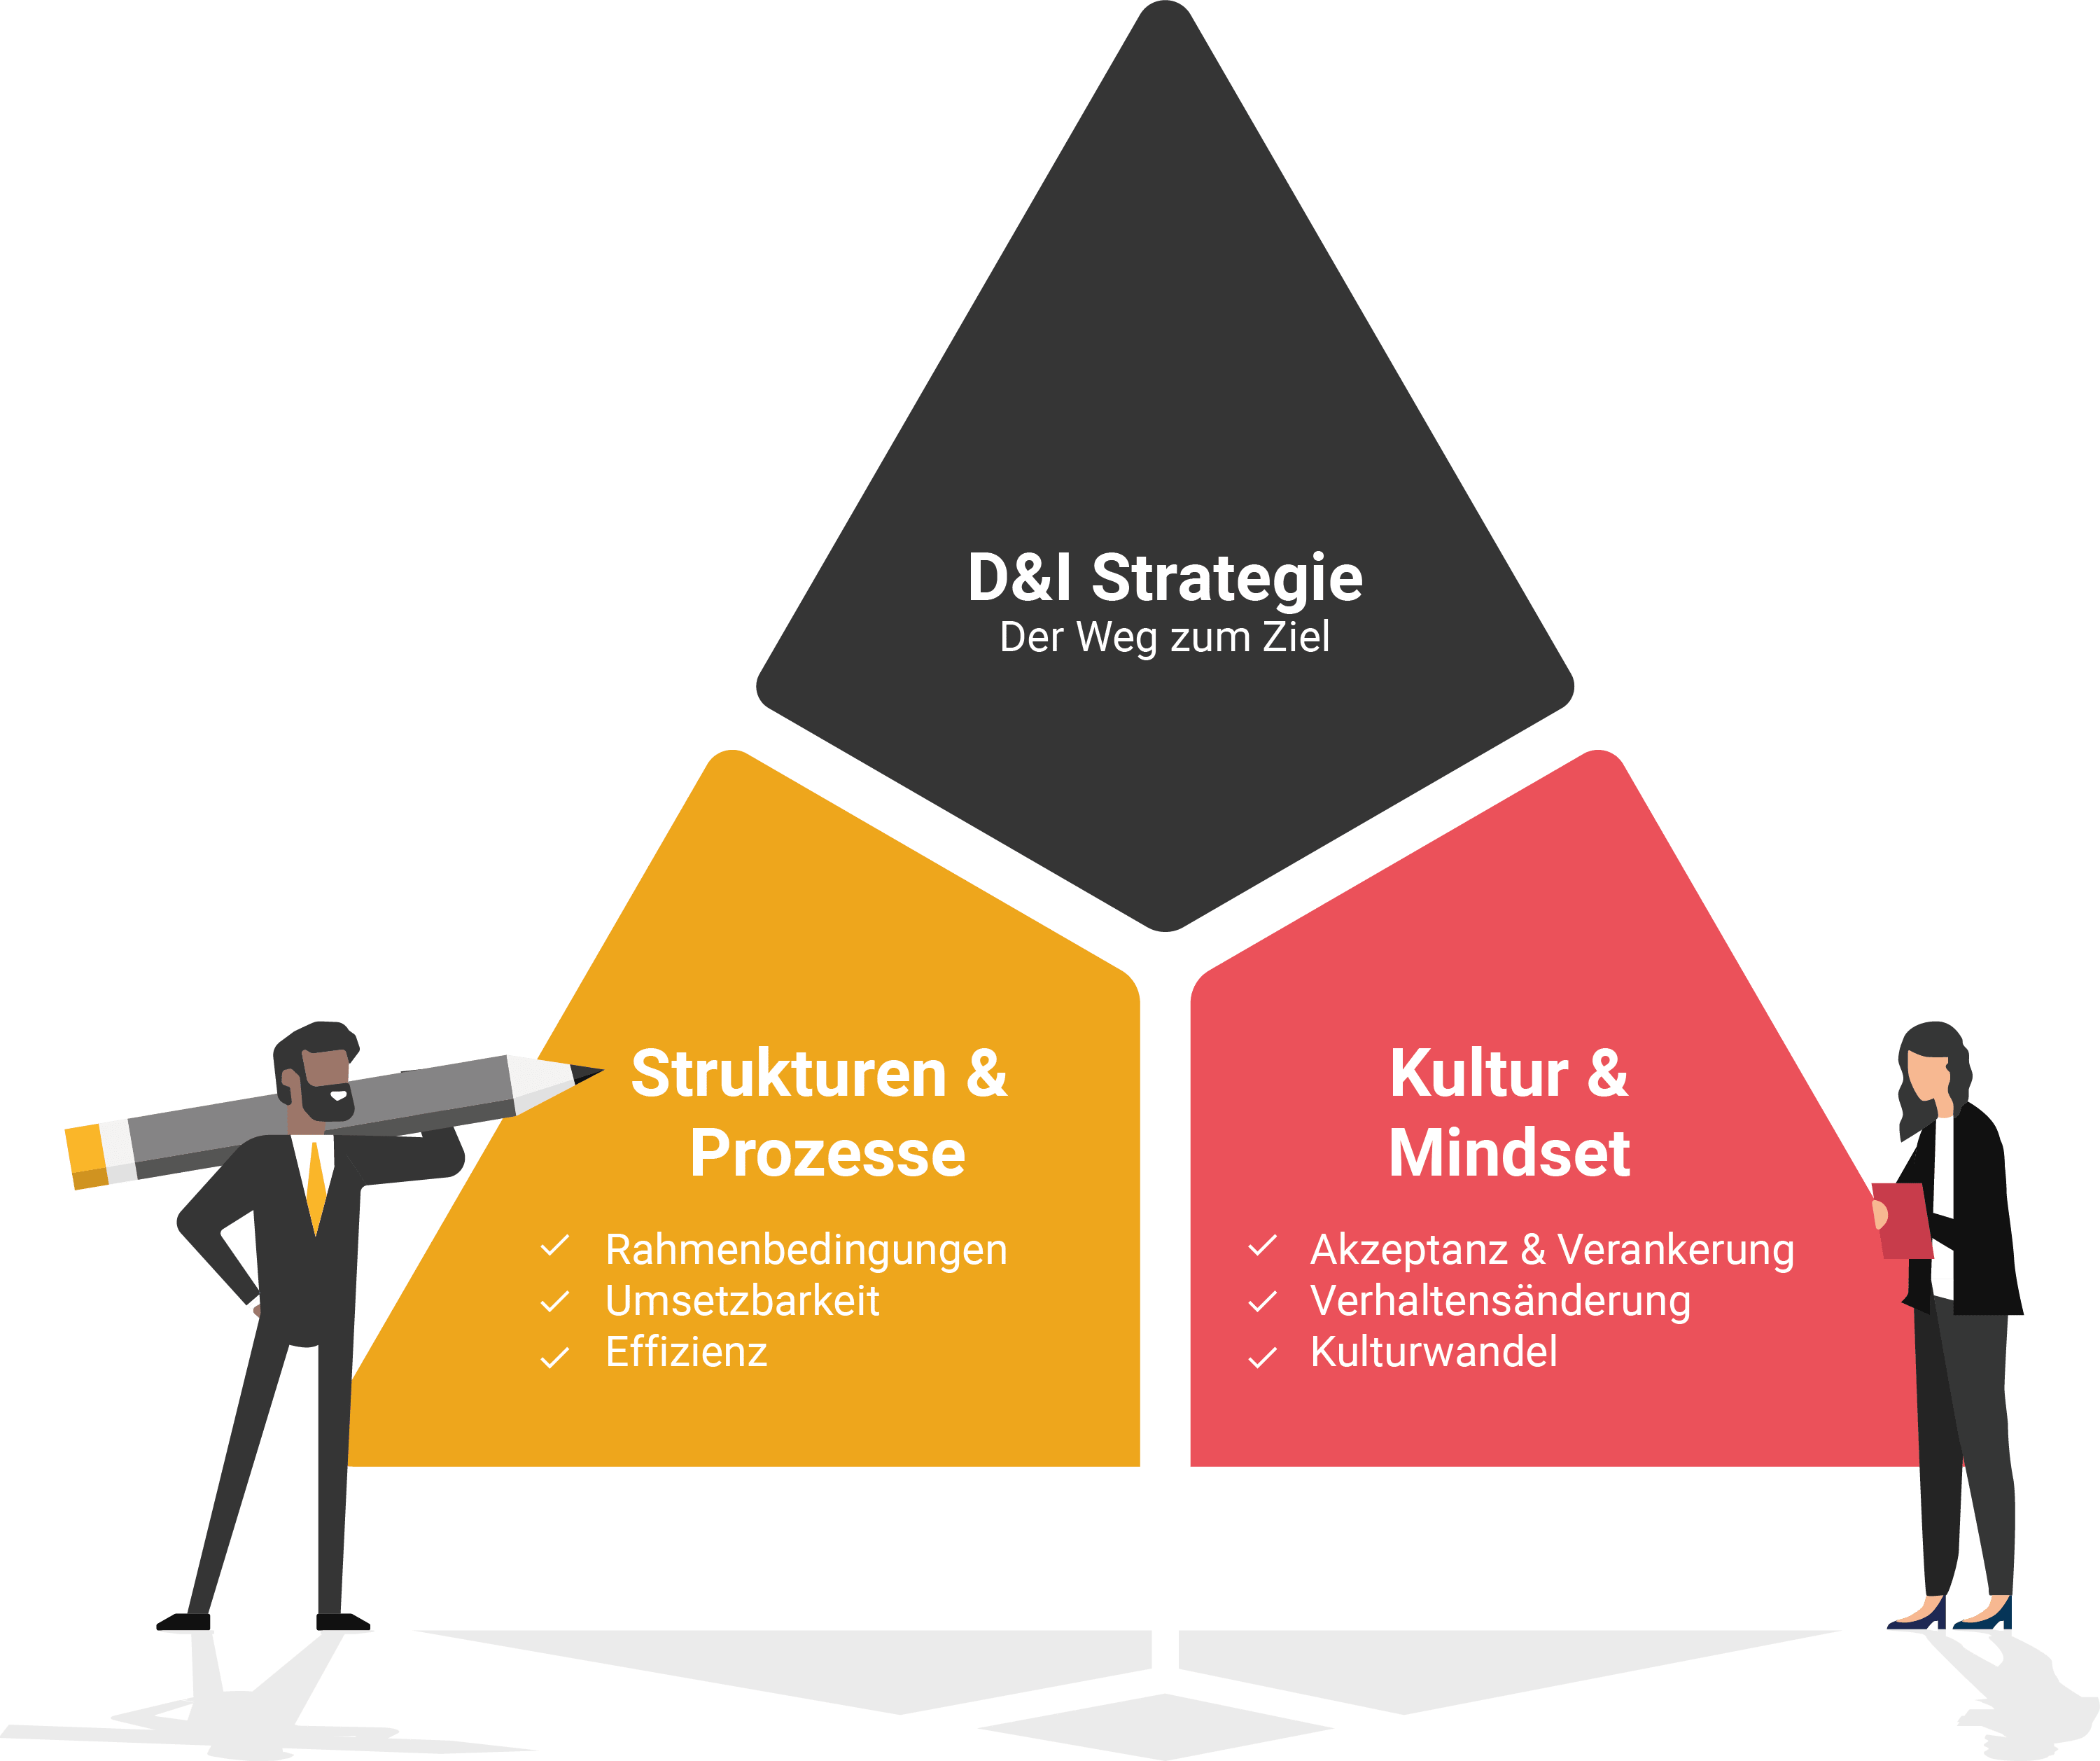 D&I Strategie, Strukturen & Prozesse, Kultur & Mindset